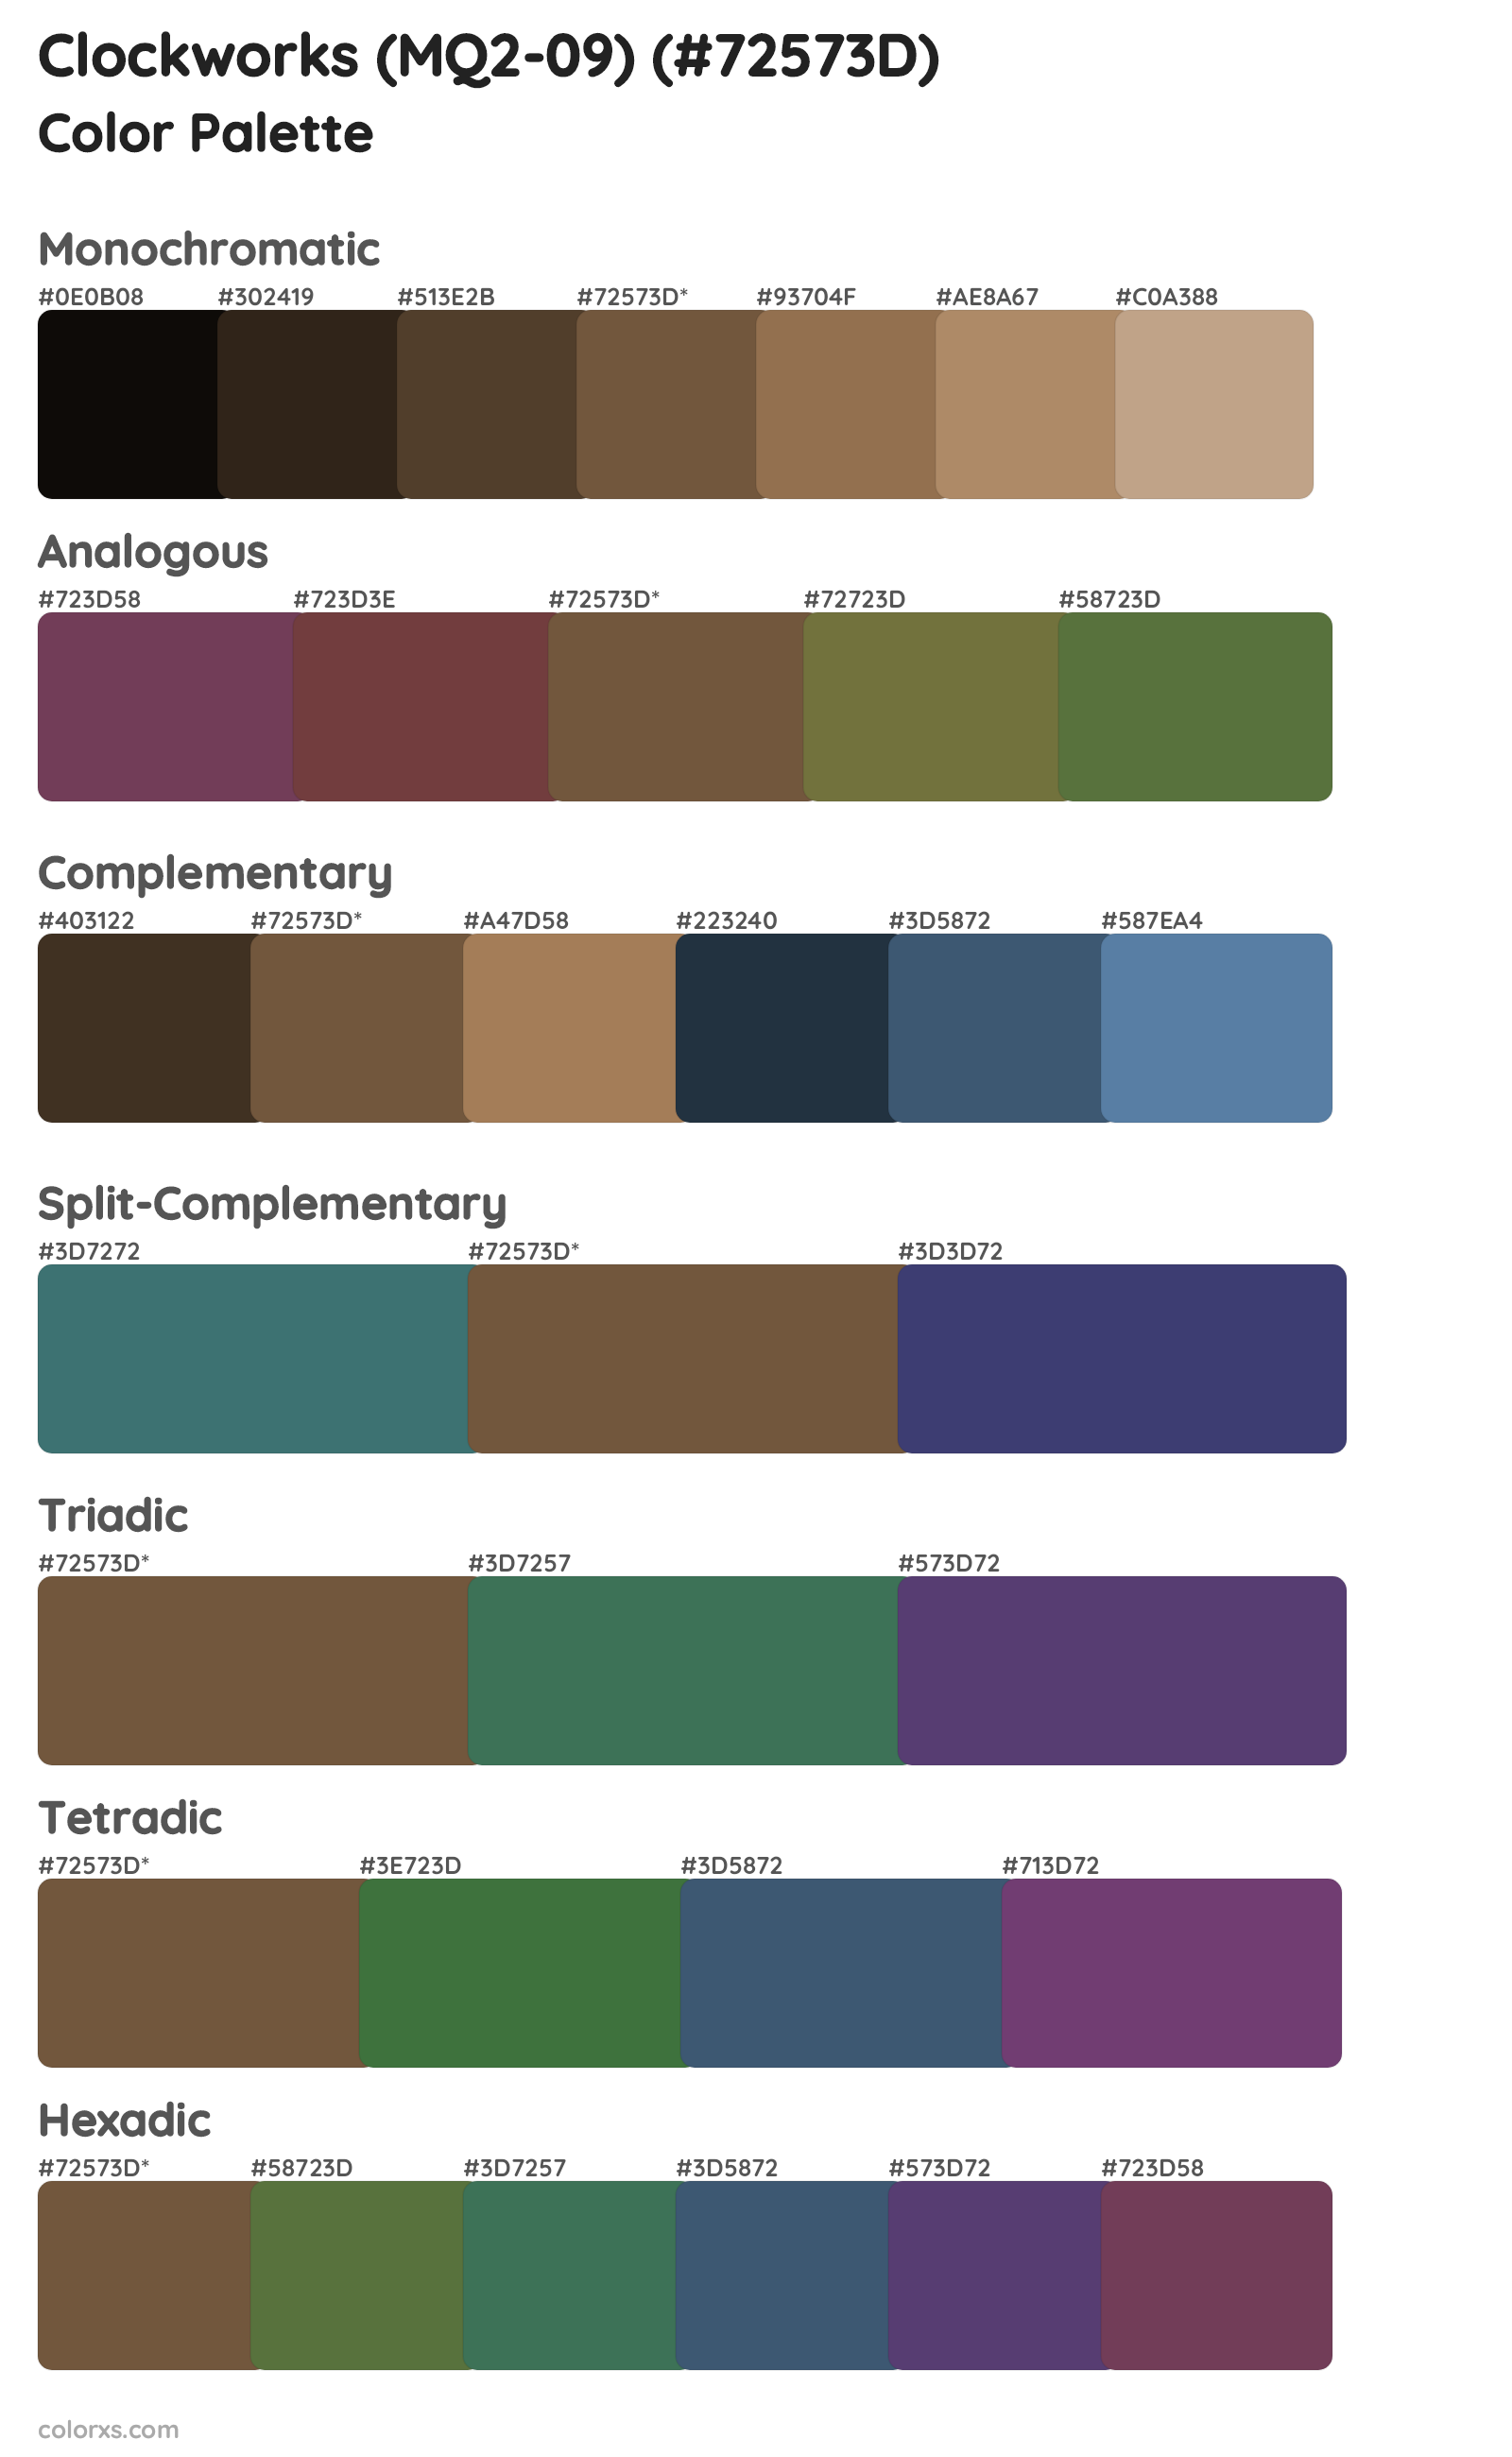 Clockworks (MQ2-09) Color Scheme Palettes